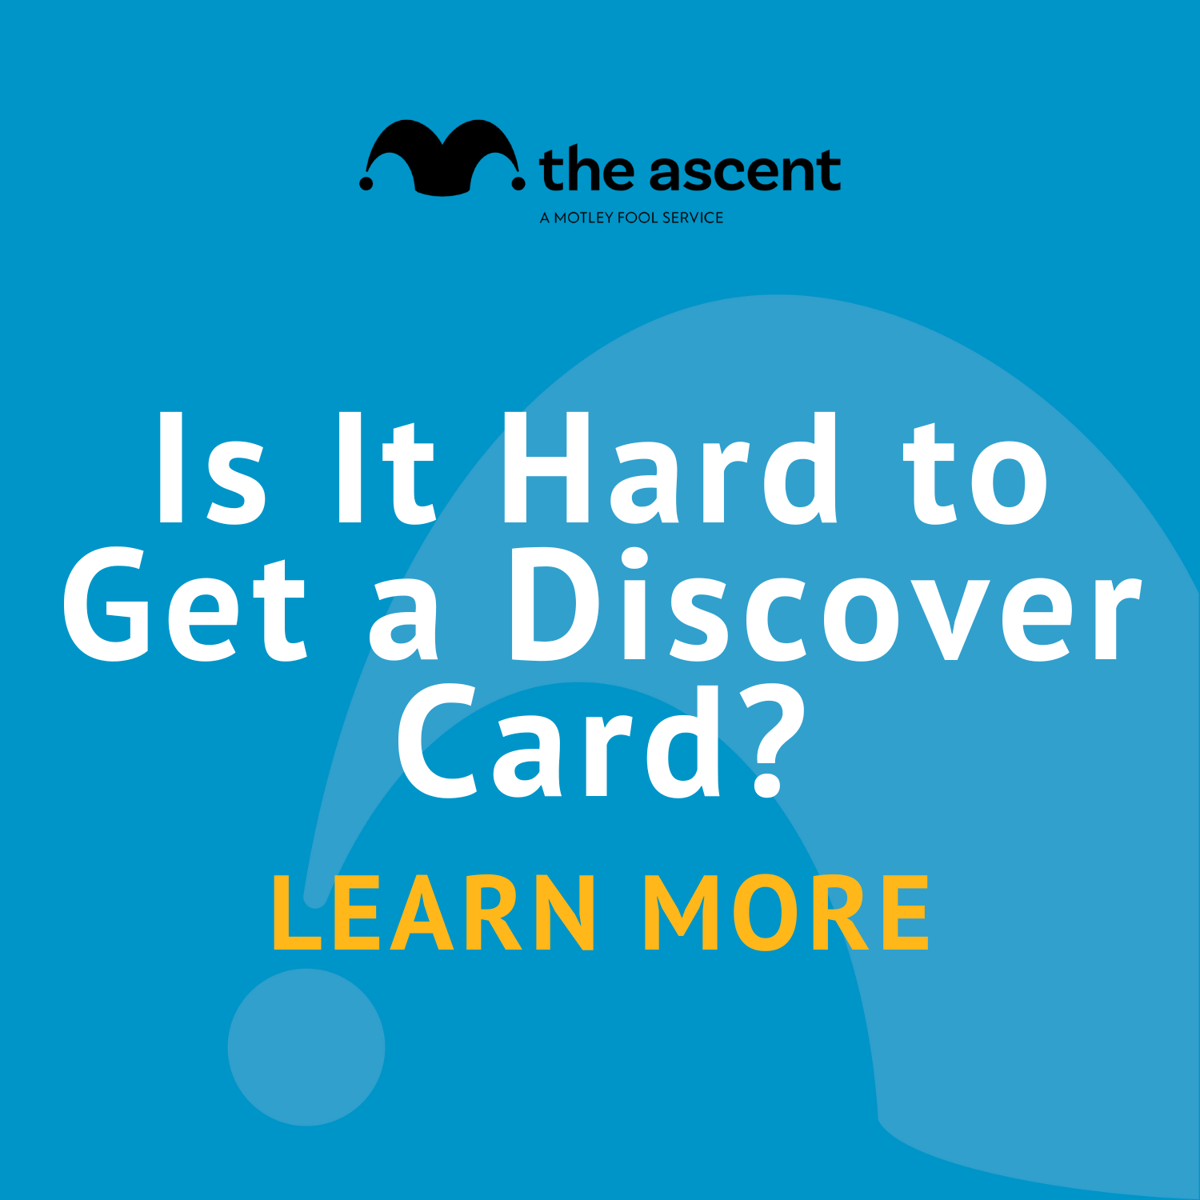 ¿Qué tan difícil es Discover IT Card para obtener?